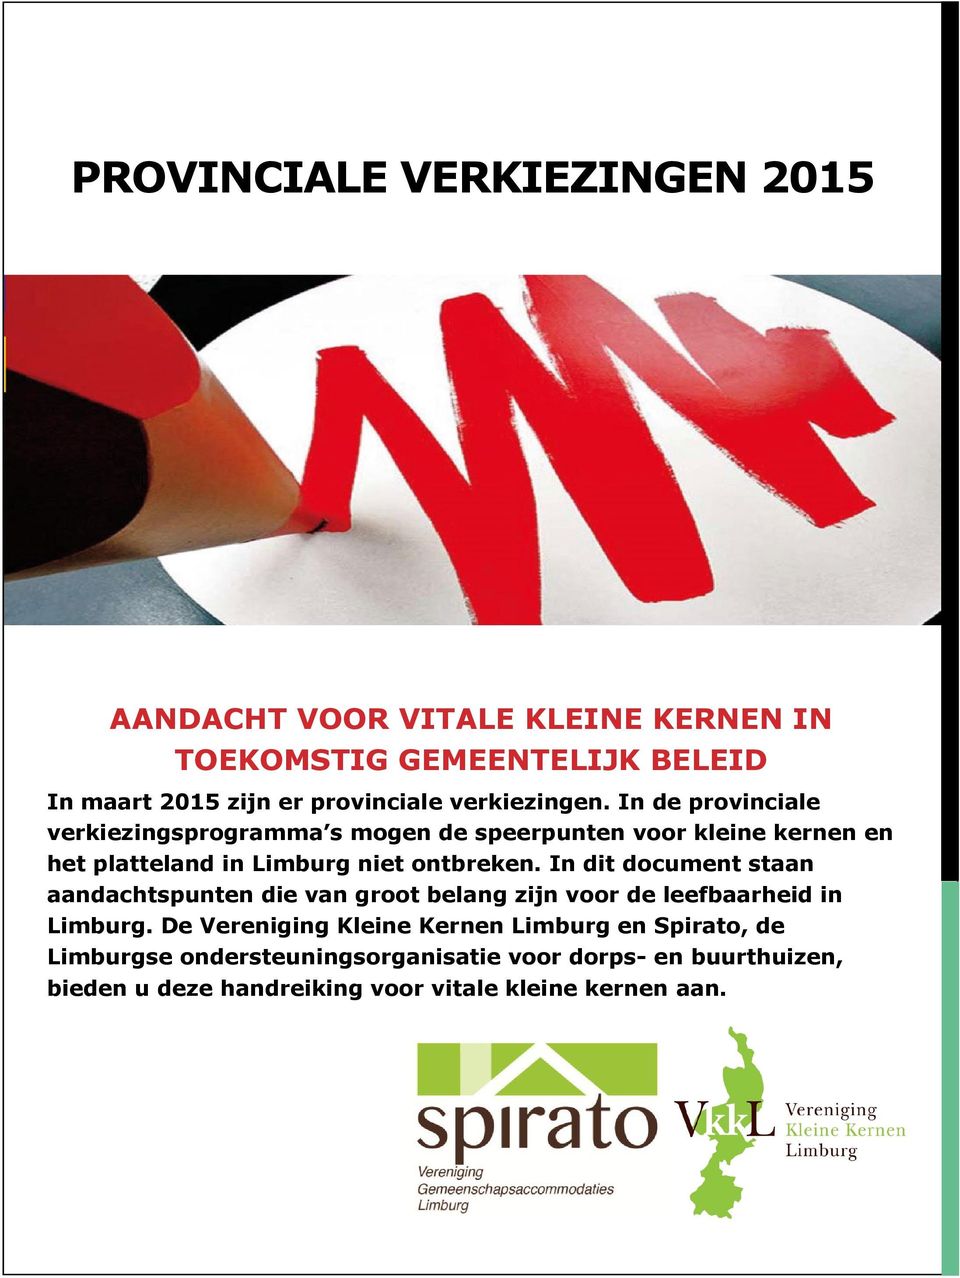 In de provinciale verkiezingsprogramma s mogen de speerpunten voor kleine kernen en het platteland in Limburg niet ontbreken.